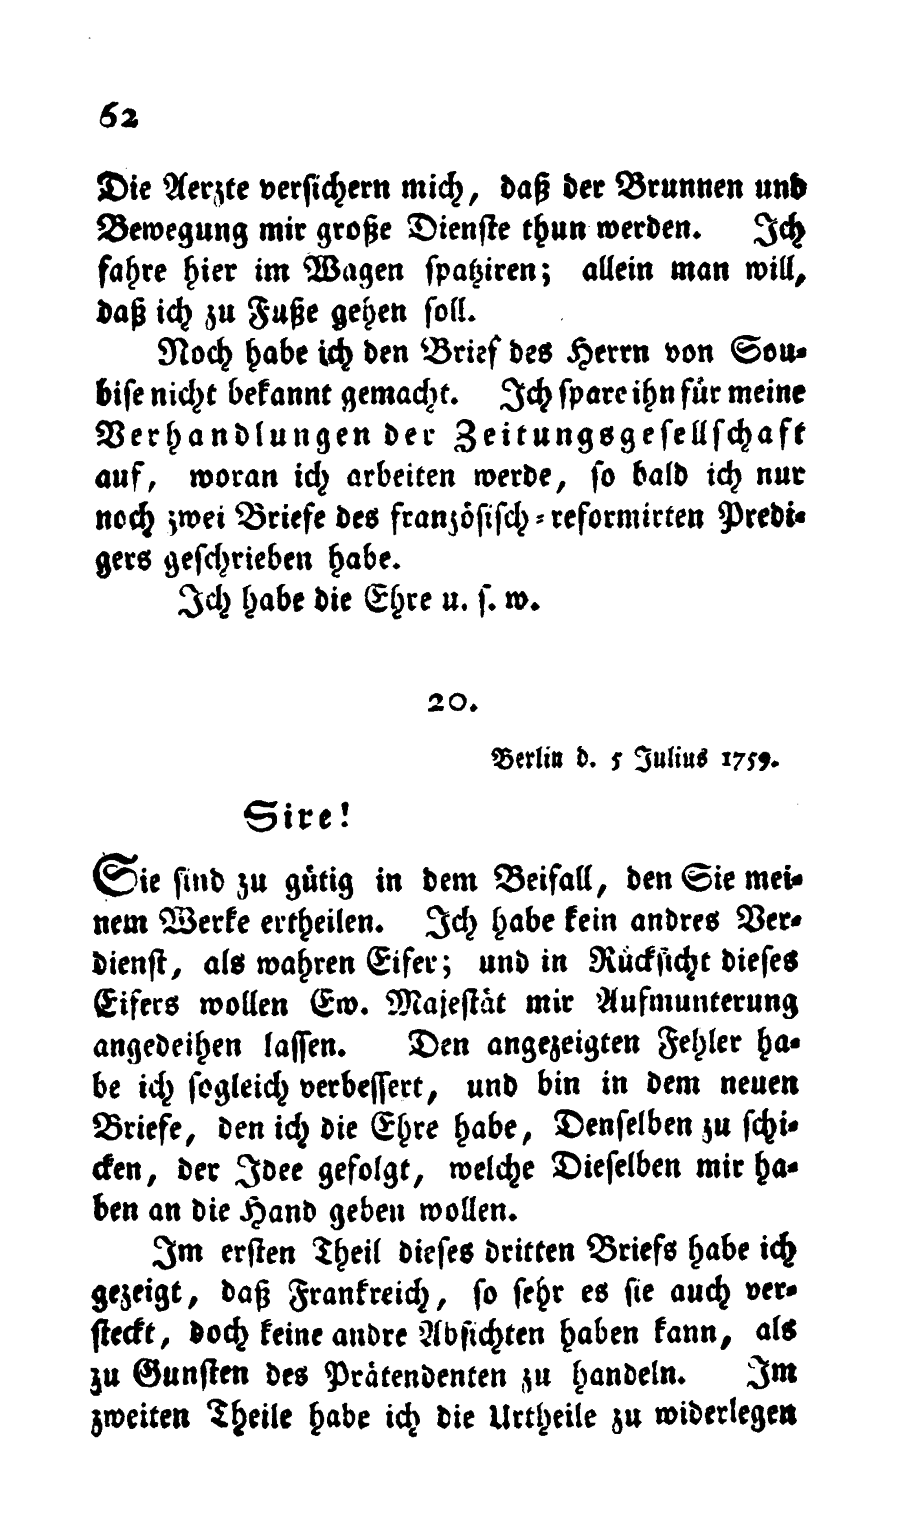 S. 62, Obj. 2